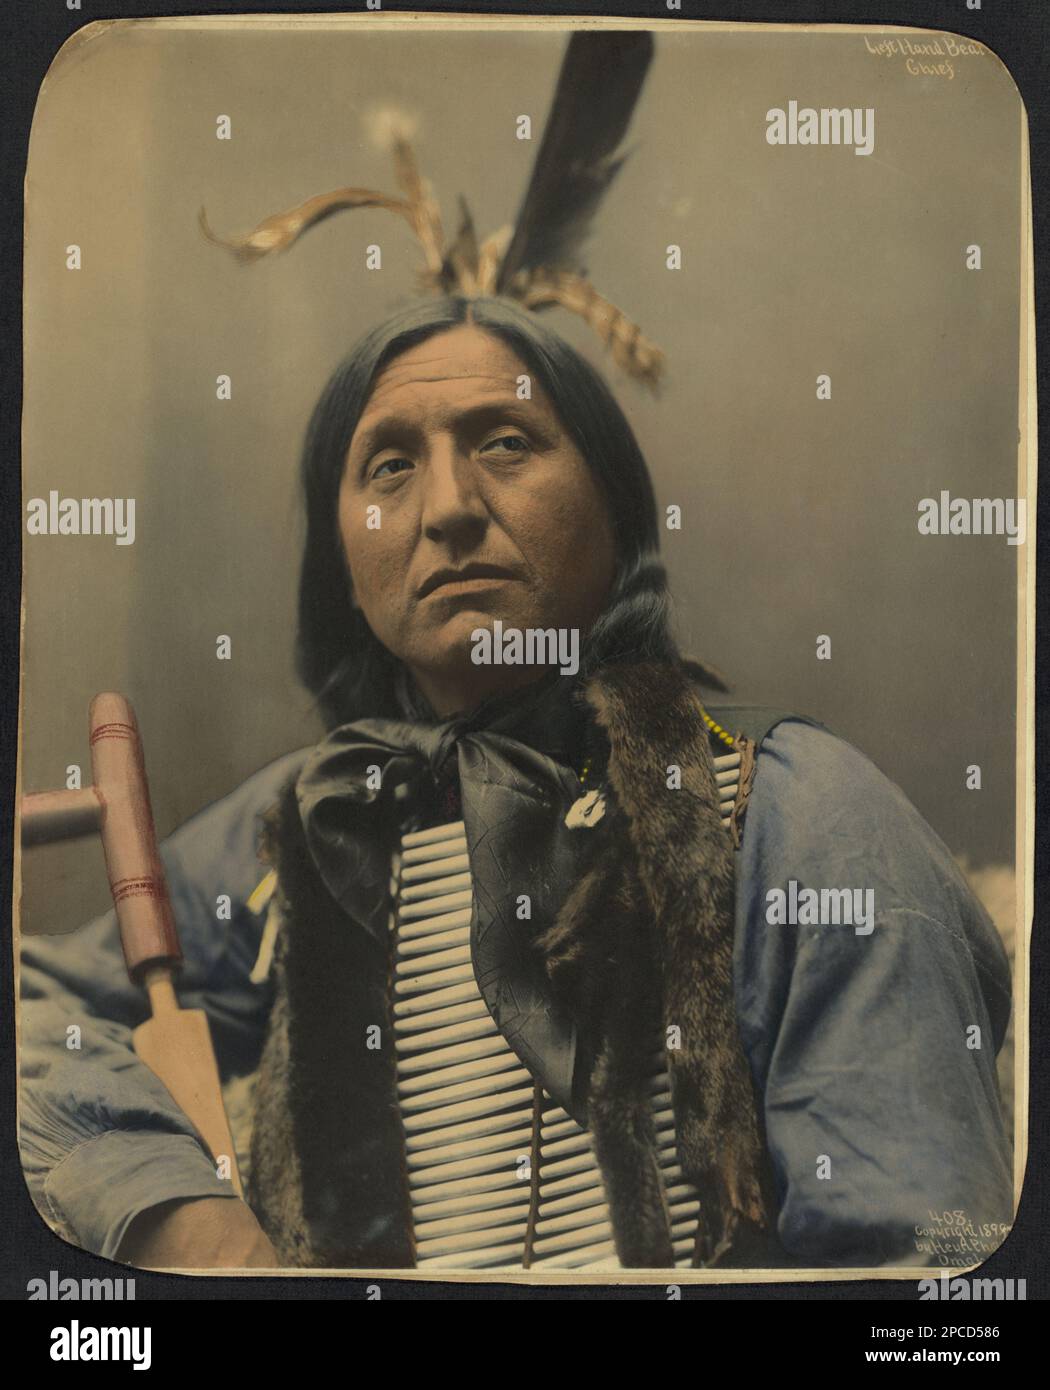 1899 , USA : Native American CHIEF Left Hand Bear . Foto di Heyn Photo, Omaha , Nebrasca . - STORIA - foto storiche - foto storica - Indiani - INDIANI D' AMERICA - PELLEROSSA - nativi americani - Indiani del Nord America - Indiani del Nord America - CAPO TRIBU' INDIANO - GUERRIERO - GUERRIERO - ritratto - treccia - treccie - SELGAGGIO WEST - piuma - Piume - piume - ---- Archivio GBB Foto Stock